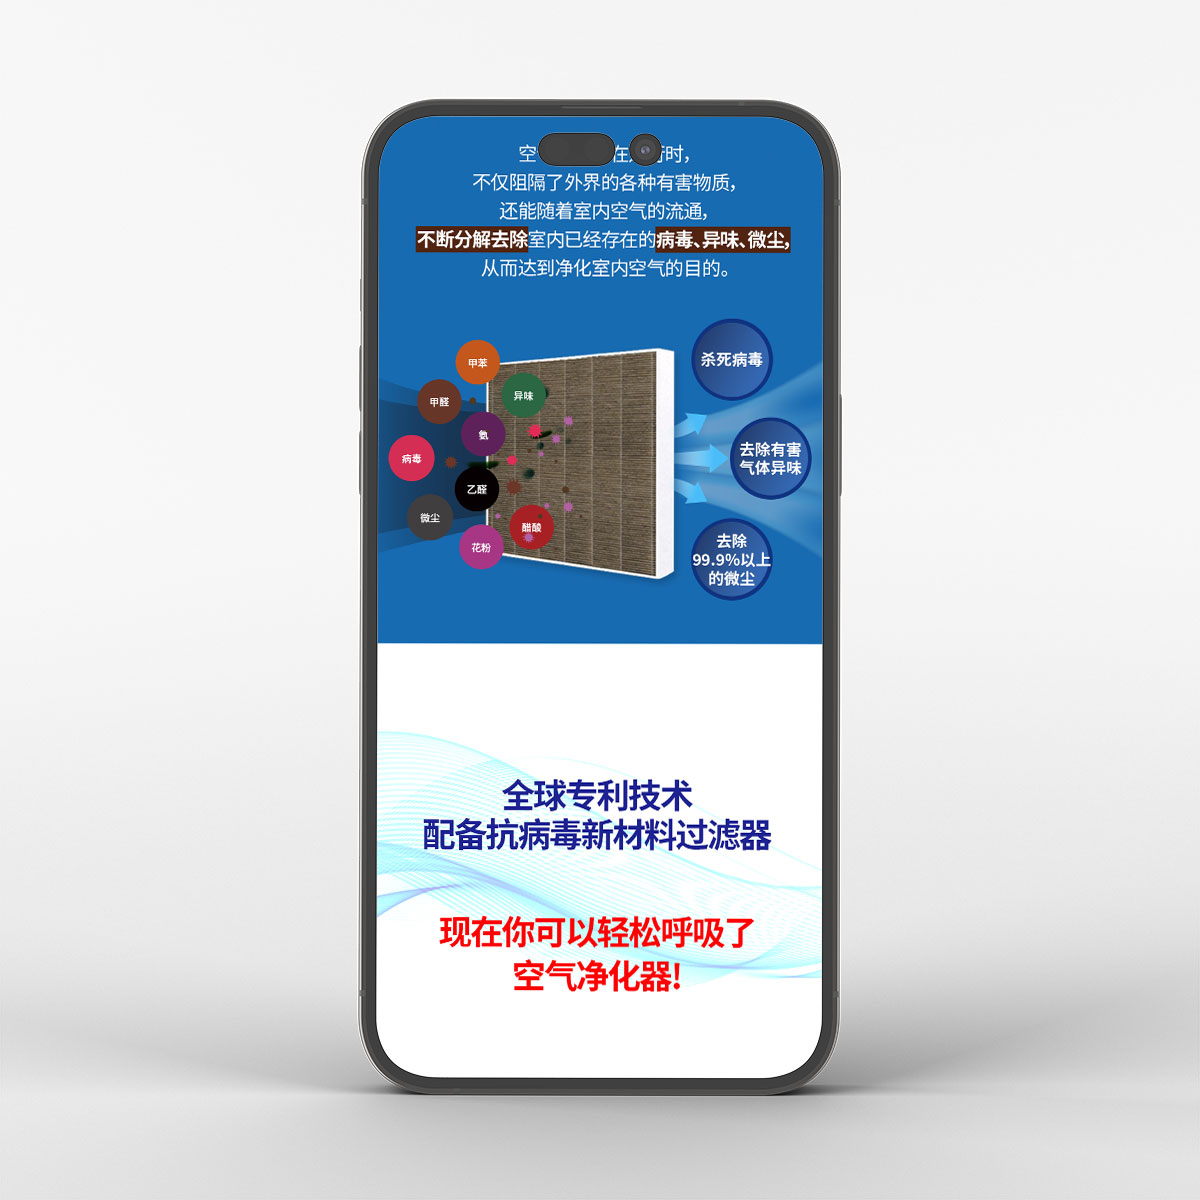 (주)블루인더스 공기청정기 필터 상세페이지 중국어 버전 작업